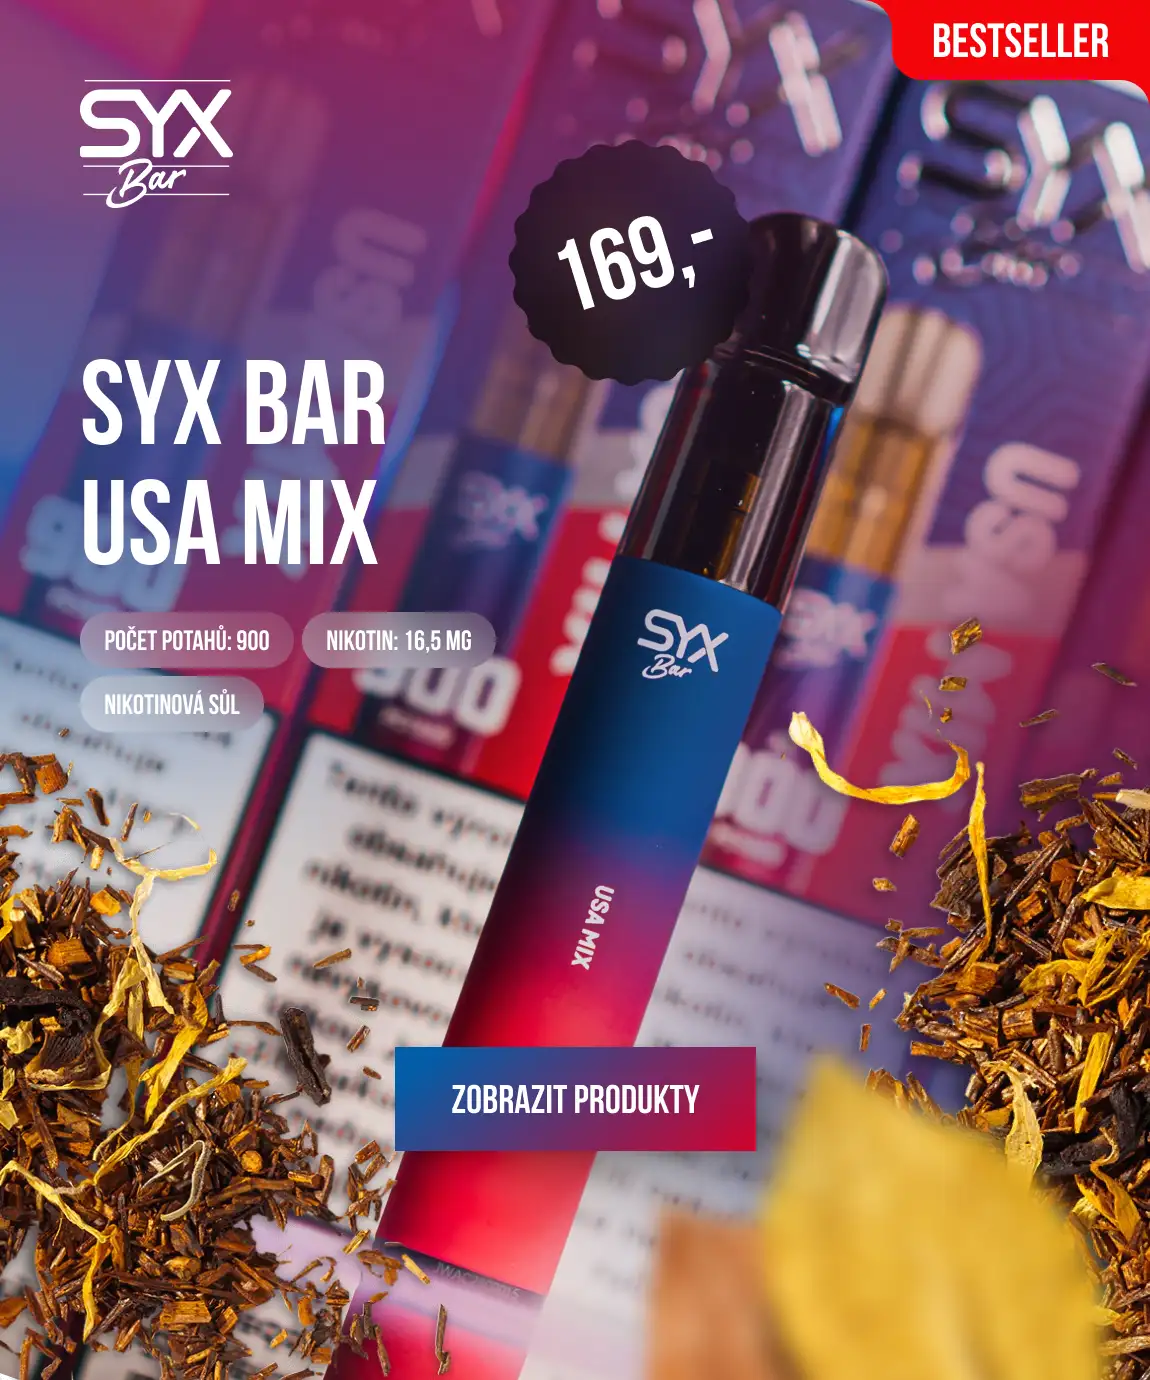 SYX BAR USA MIX: Pro milovníky klasické chuti tabáku